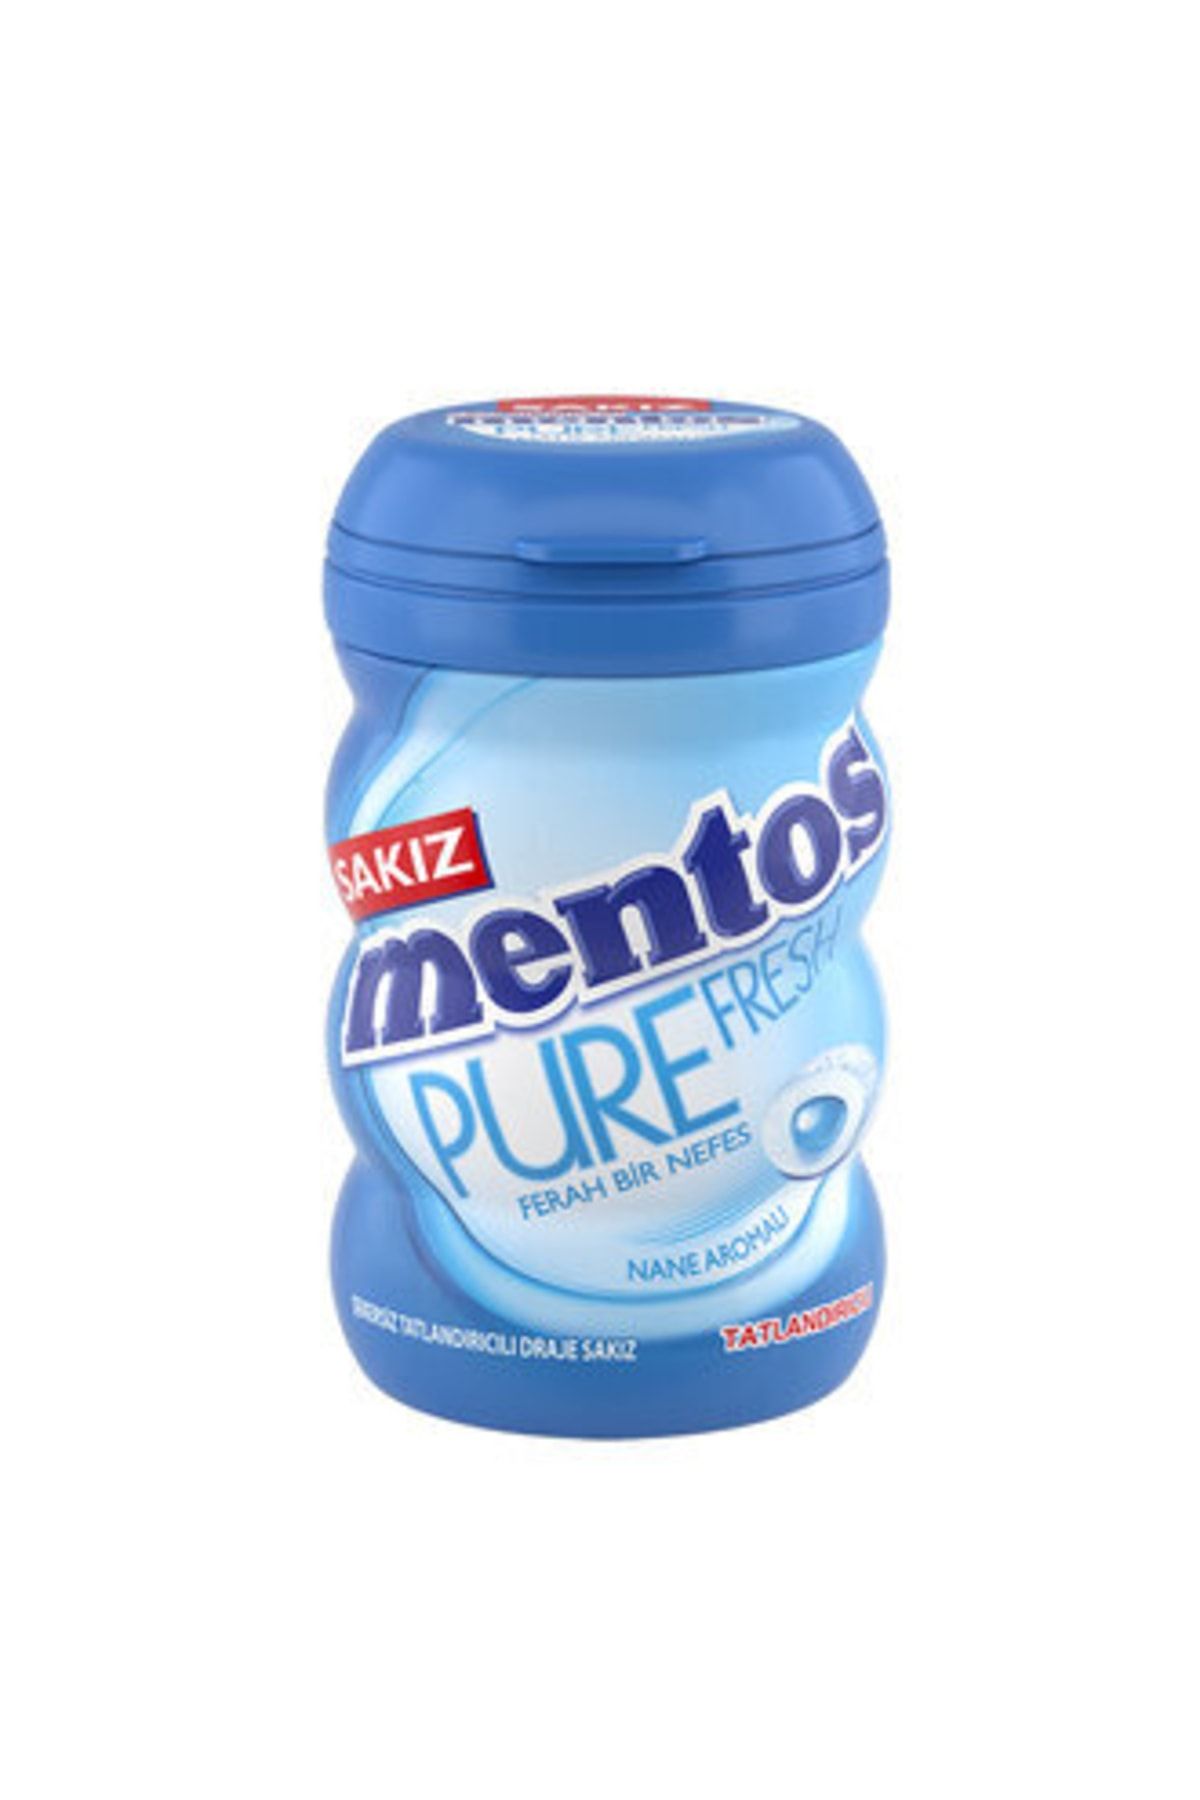 Mentos Pure Fresh Nane Aromalı Draje Sakız 90 G Fiyatı Yorumları Trendyol 0357